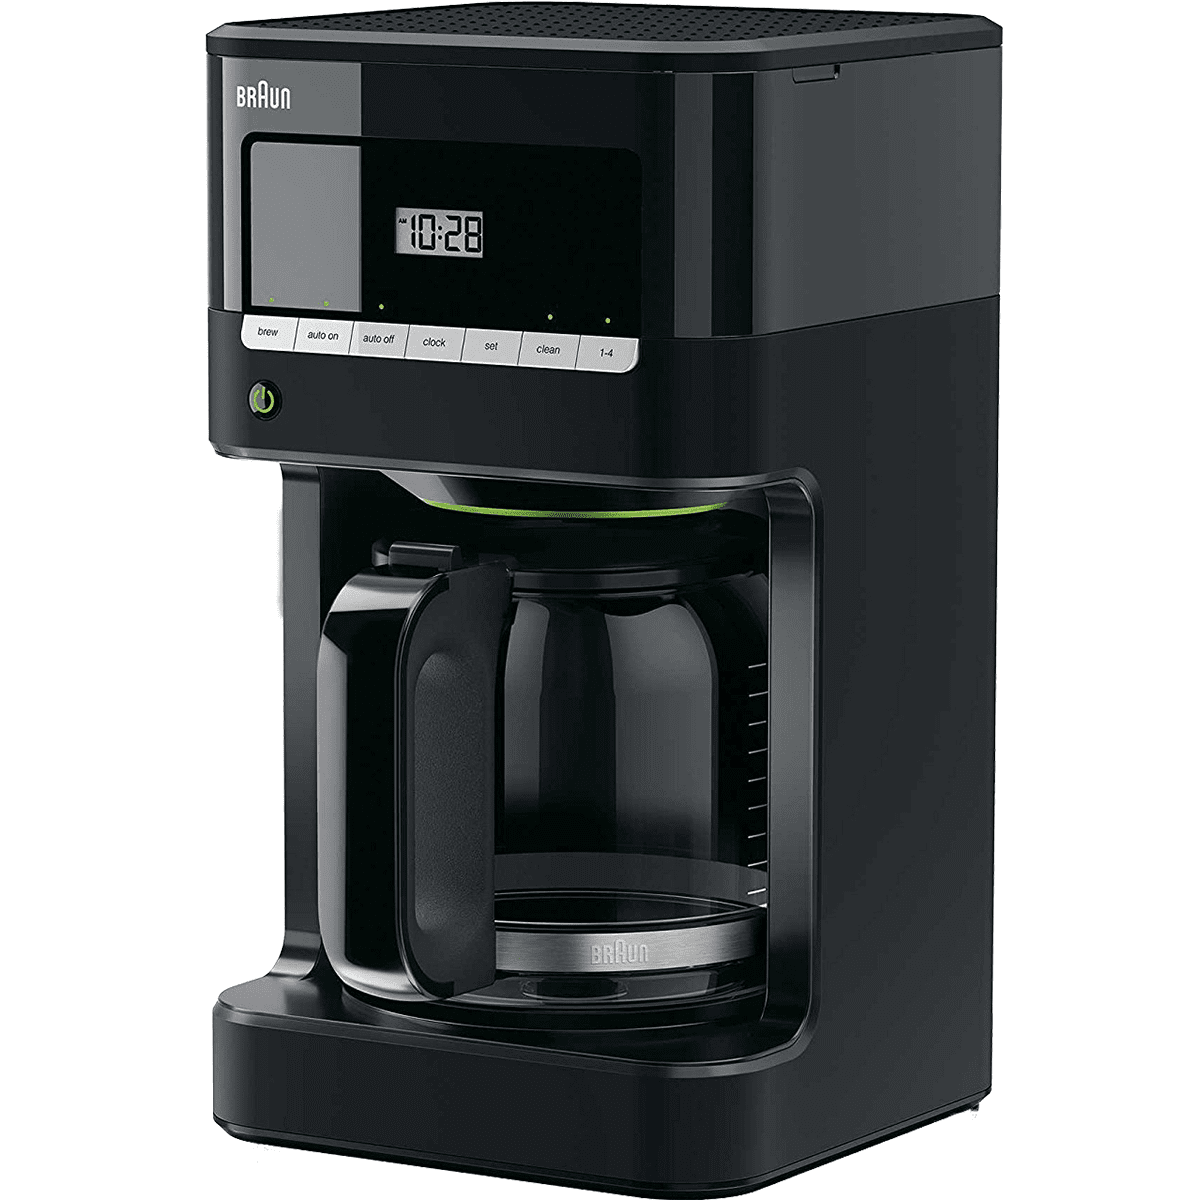 Braun Brewsense 12-cup Drip Coffee Maker - Black (kf7000bk)